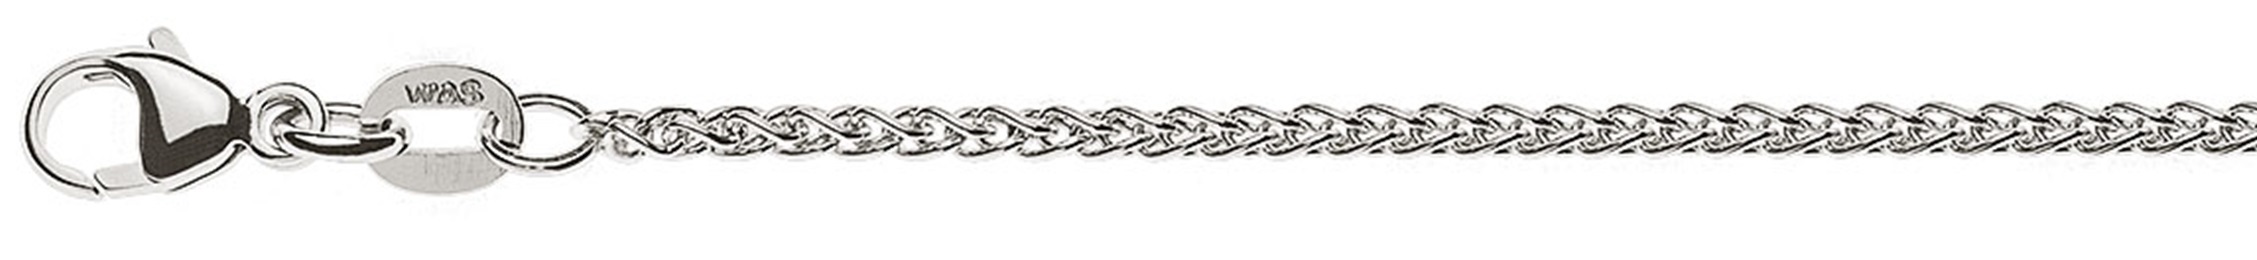 AURONOS Prestige Necklace white gold 18K cable chain 42cm 1.65mm